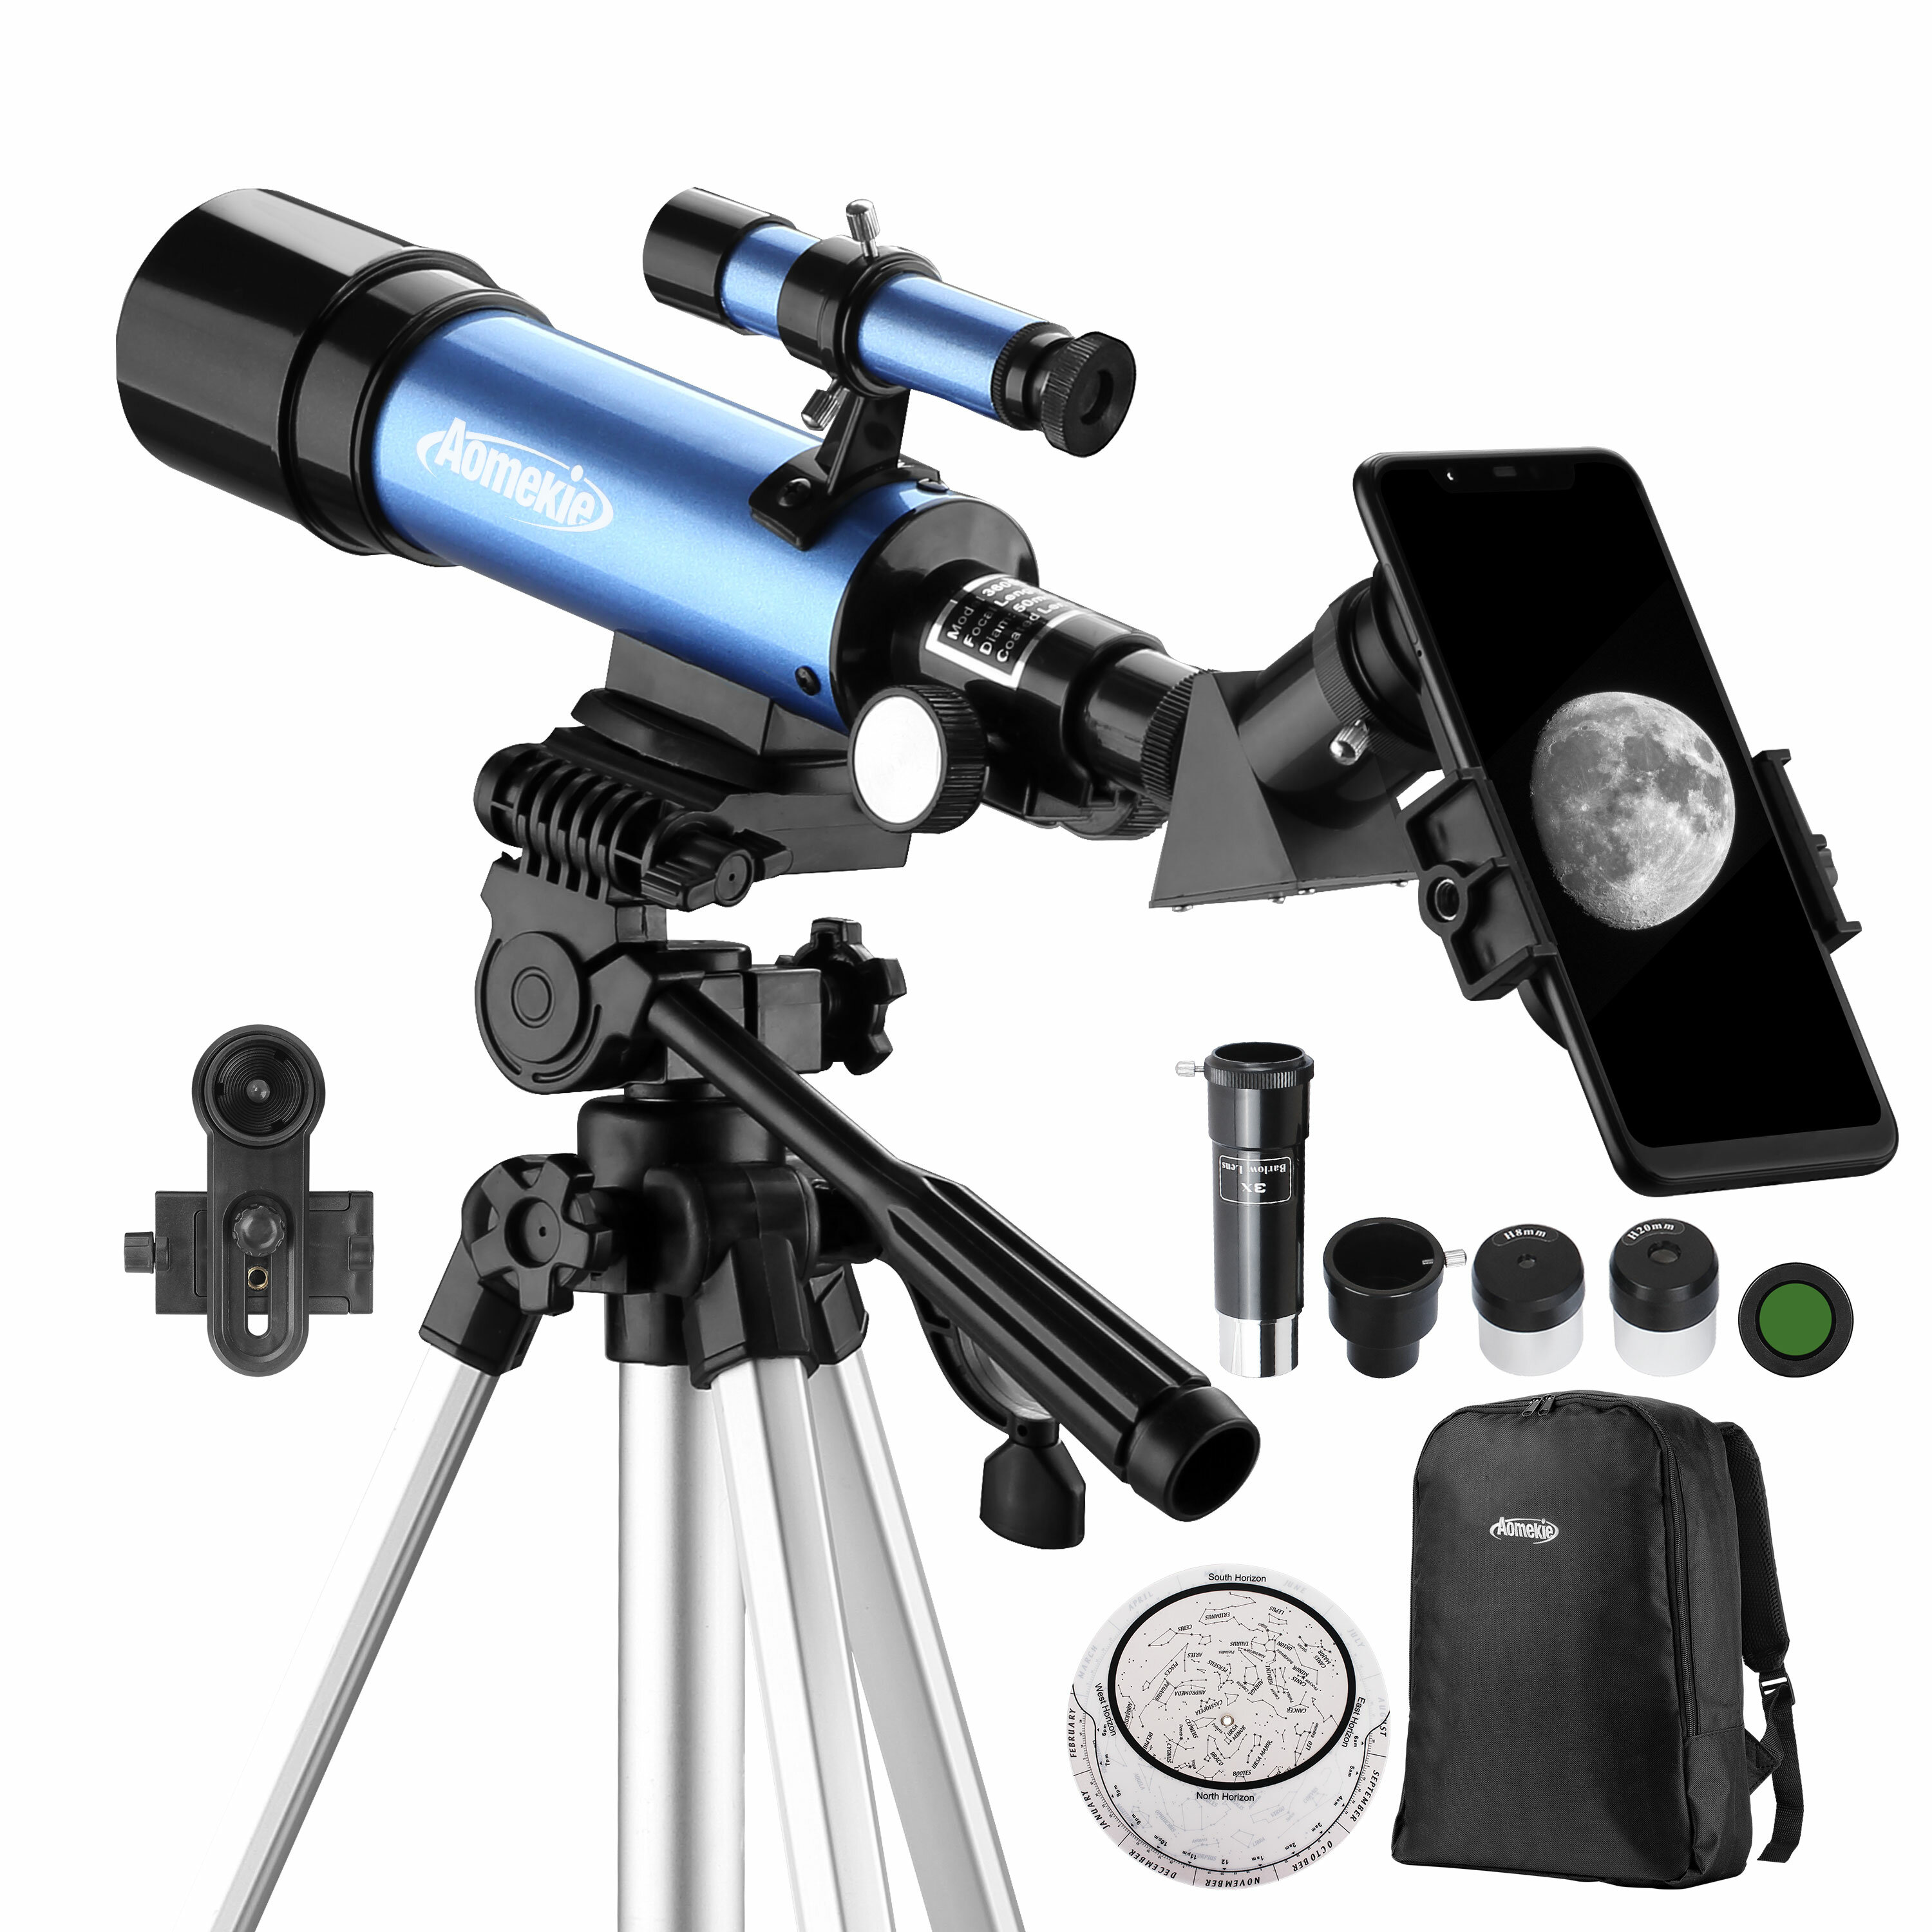 [EU Direct] Telescopio astronómico AOMEKIE 18X-135X de 50 mm de apertura con telescopio refractor de trípode ajustable y adaptador para teléfono para principiantes en astronomía AO2013